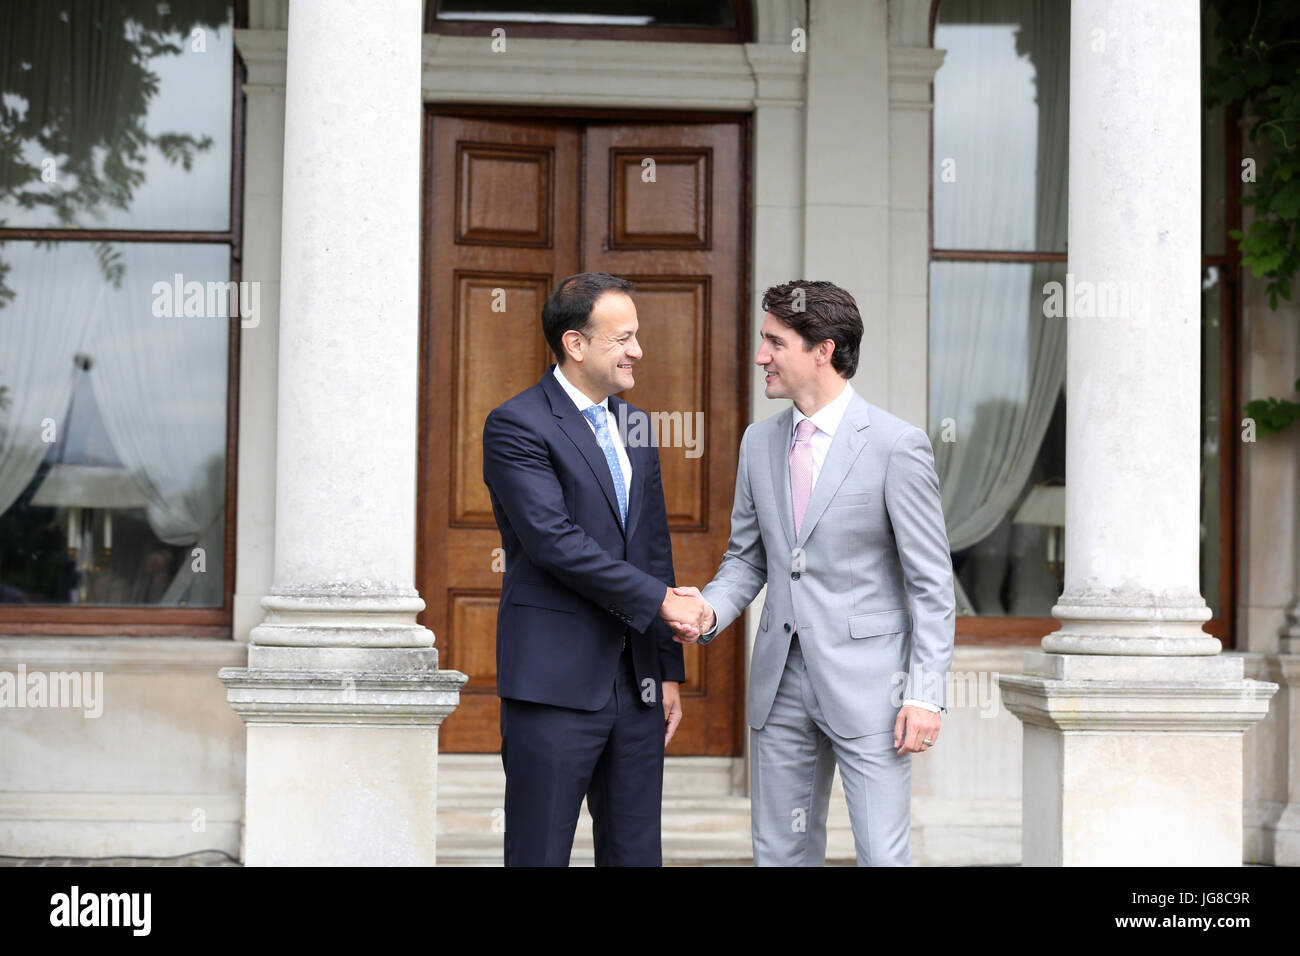 Dublin, Irlande. 4 juillet, 2017. Justin Trudeau répond à Leo Varadkar à Dublin. Le premier ministre du Canada, Justin Trudeau, serre la main comme il a rencontré le Premier Ministre et chef du parti Fine Gael(Premier ministre) Leo Varadkar(à gauche), à Farmleigh House à Dublin. M. Trudeau est sur une visite de trois jours et est prévu pour discuter de commerce entre les deux pays et les implications de l'Brexit et la possibilité d'un ralentissement, l'économie irlandaise et de ses relations avec le Royaume-Uni. M. Varadkar est le premier dirigeant politique gay. Photo : Sam Boal/RollingNews RollingNews.ie : Crédit.ie/Alamy Live News Banque D'Images